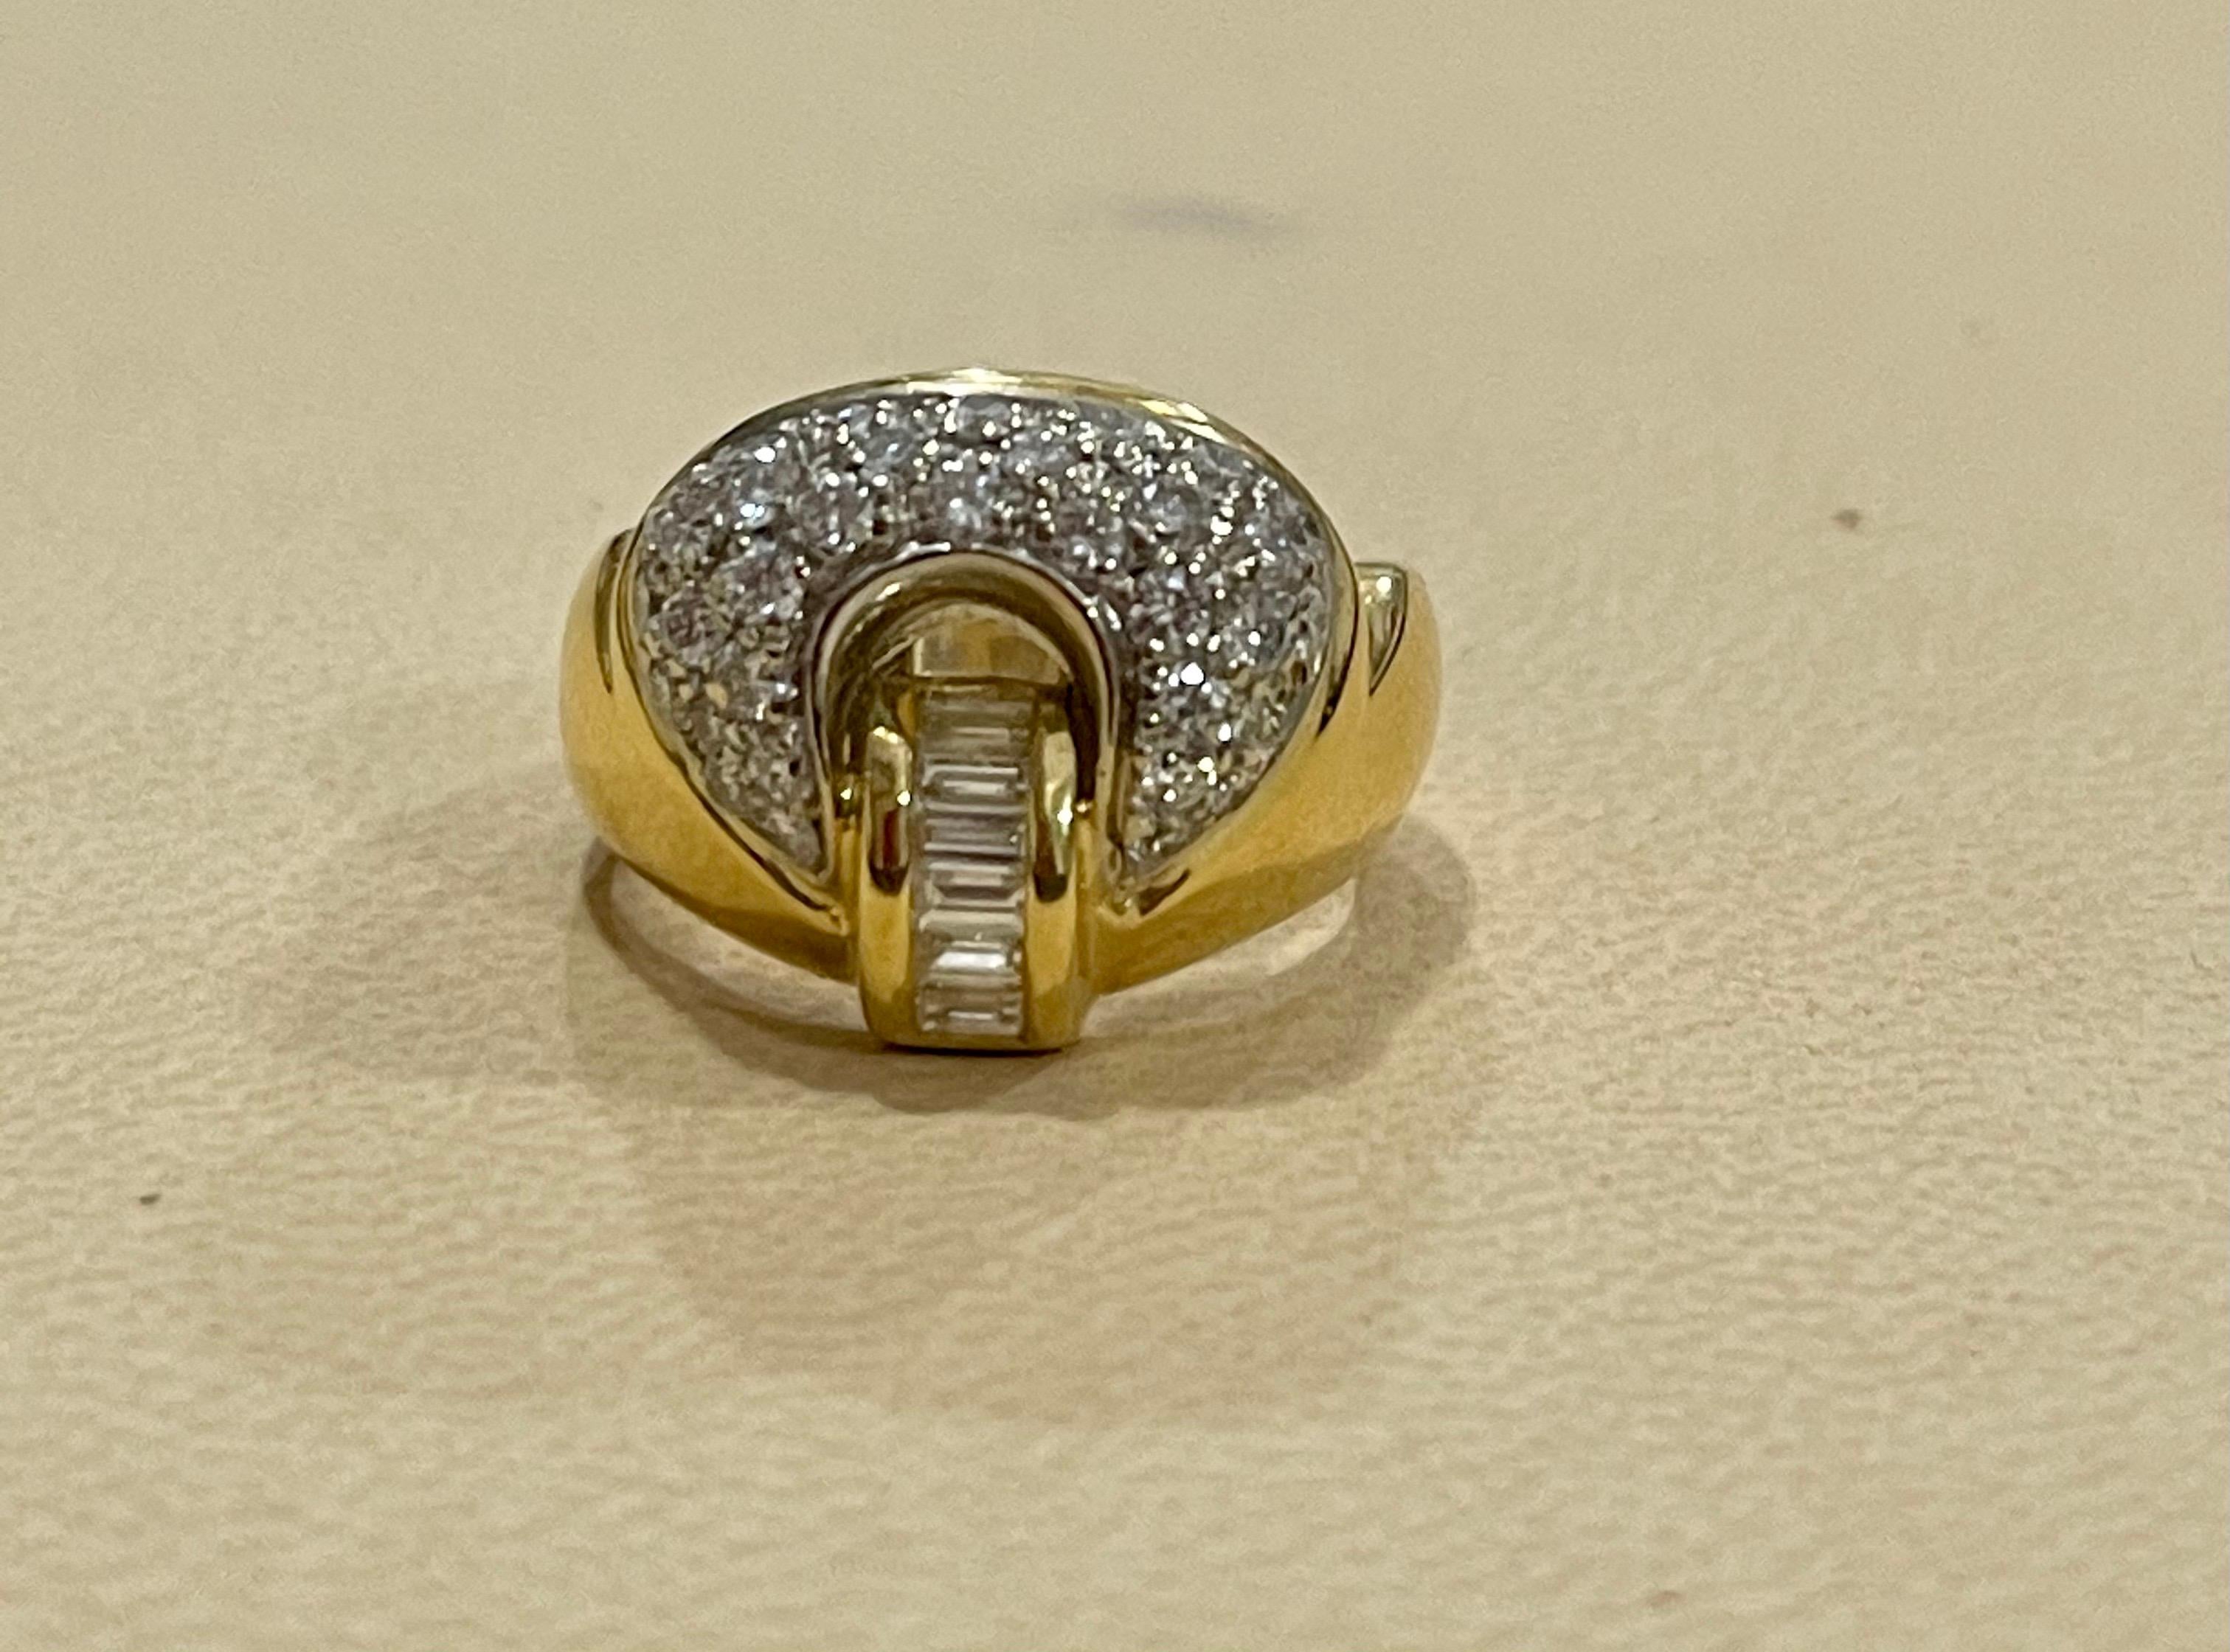 0.75 Karat Diamant Cocktail 18 Karat Gelbgold Ring Größe 4
18 K Gold gestempelt  9.2 Gramm. Hergestellt in Italien
Diamant VS Qualität und G/H Farbe.

Es gibt  runde Diamanten mit Brillantschliff im Ring mit wenigen Baguettes

Die Ringgröße beträgt